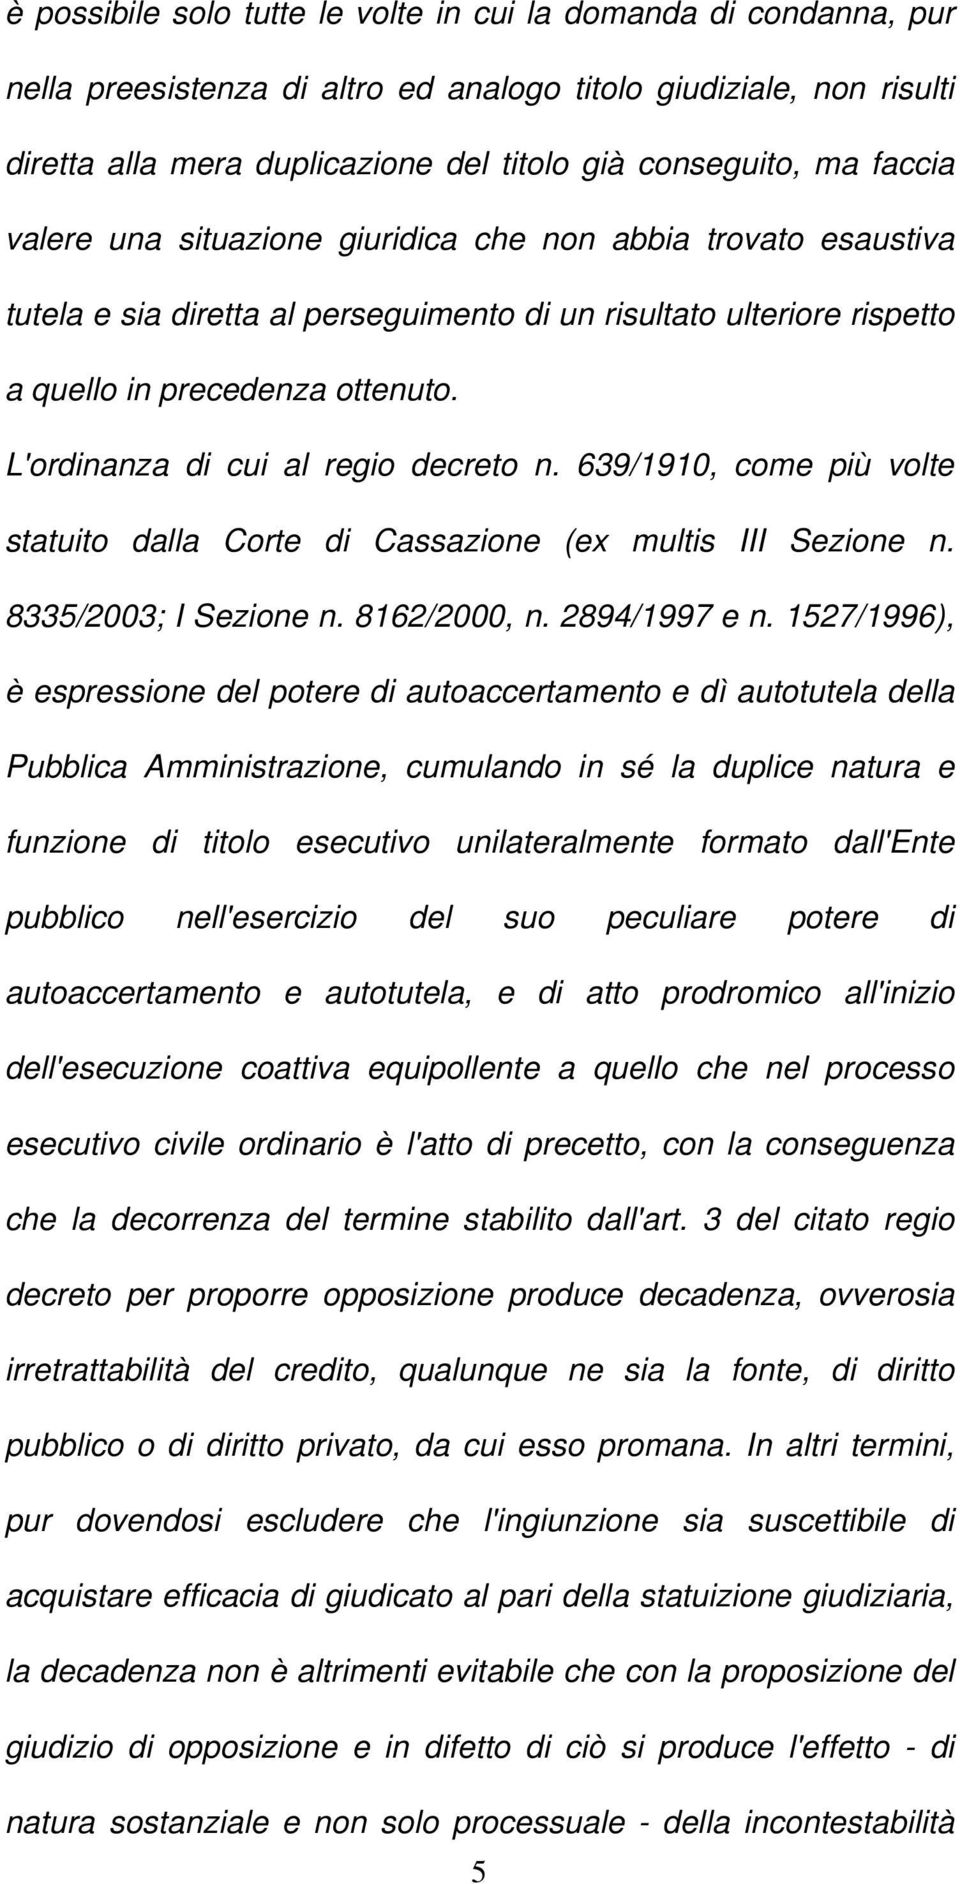 L'ordinanza di cui al regio decreto n. 639/1910, come più volte statuito dalla Corte di Cassazione (ex multis III Sezione n. 8335/2003; I Sezione n. 8162/2000, n. 2894/1997 e n.